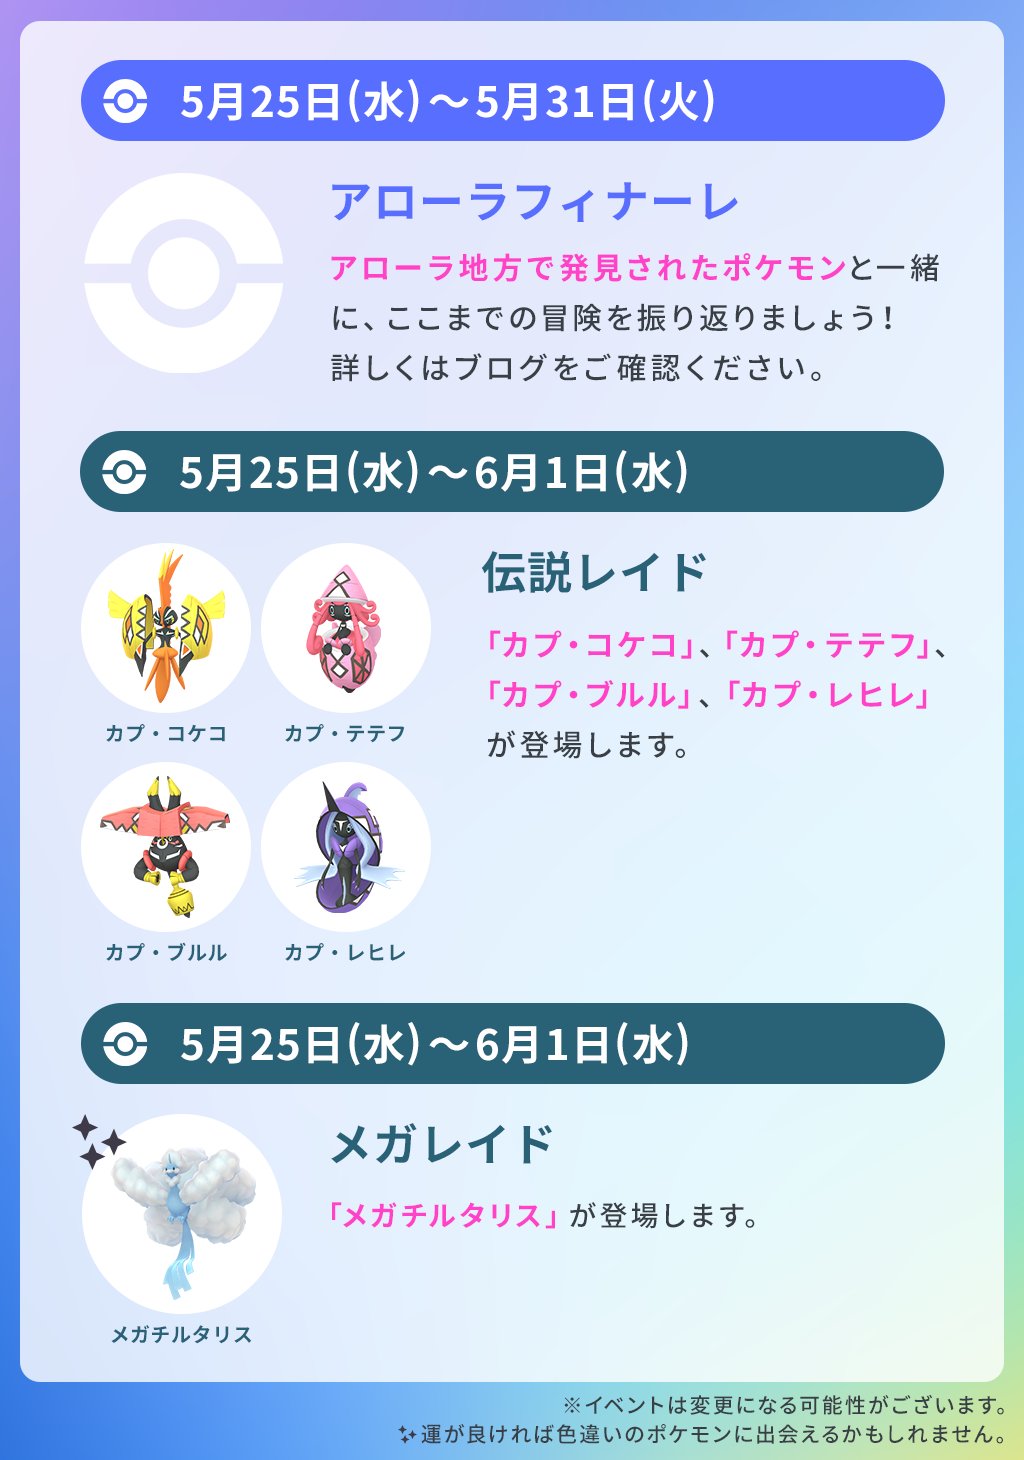 Pokemon Go Japan ポケモンgo 今週のスケジュール 5月25日 水 から伝説レイドに カプ コケコ カプ テテフ カプ ブルル カプ レヒレ が集結します ぜひご参加ください T Co Pffmvxgksj Twitter